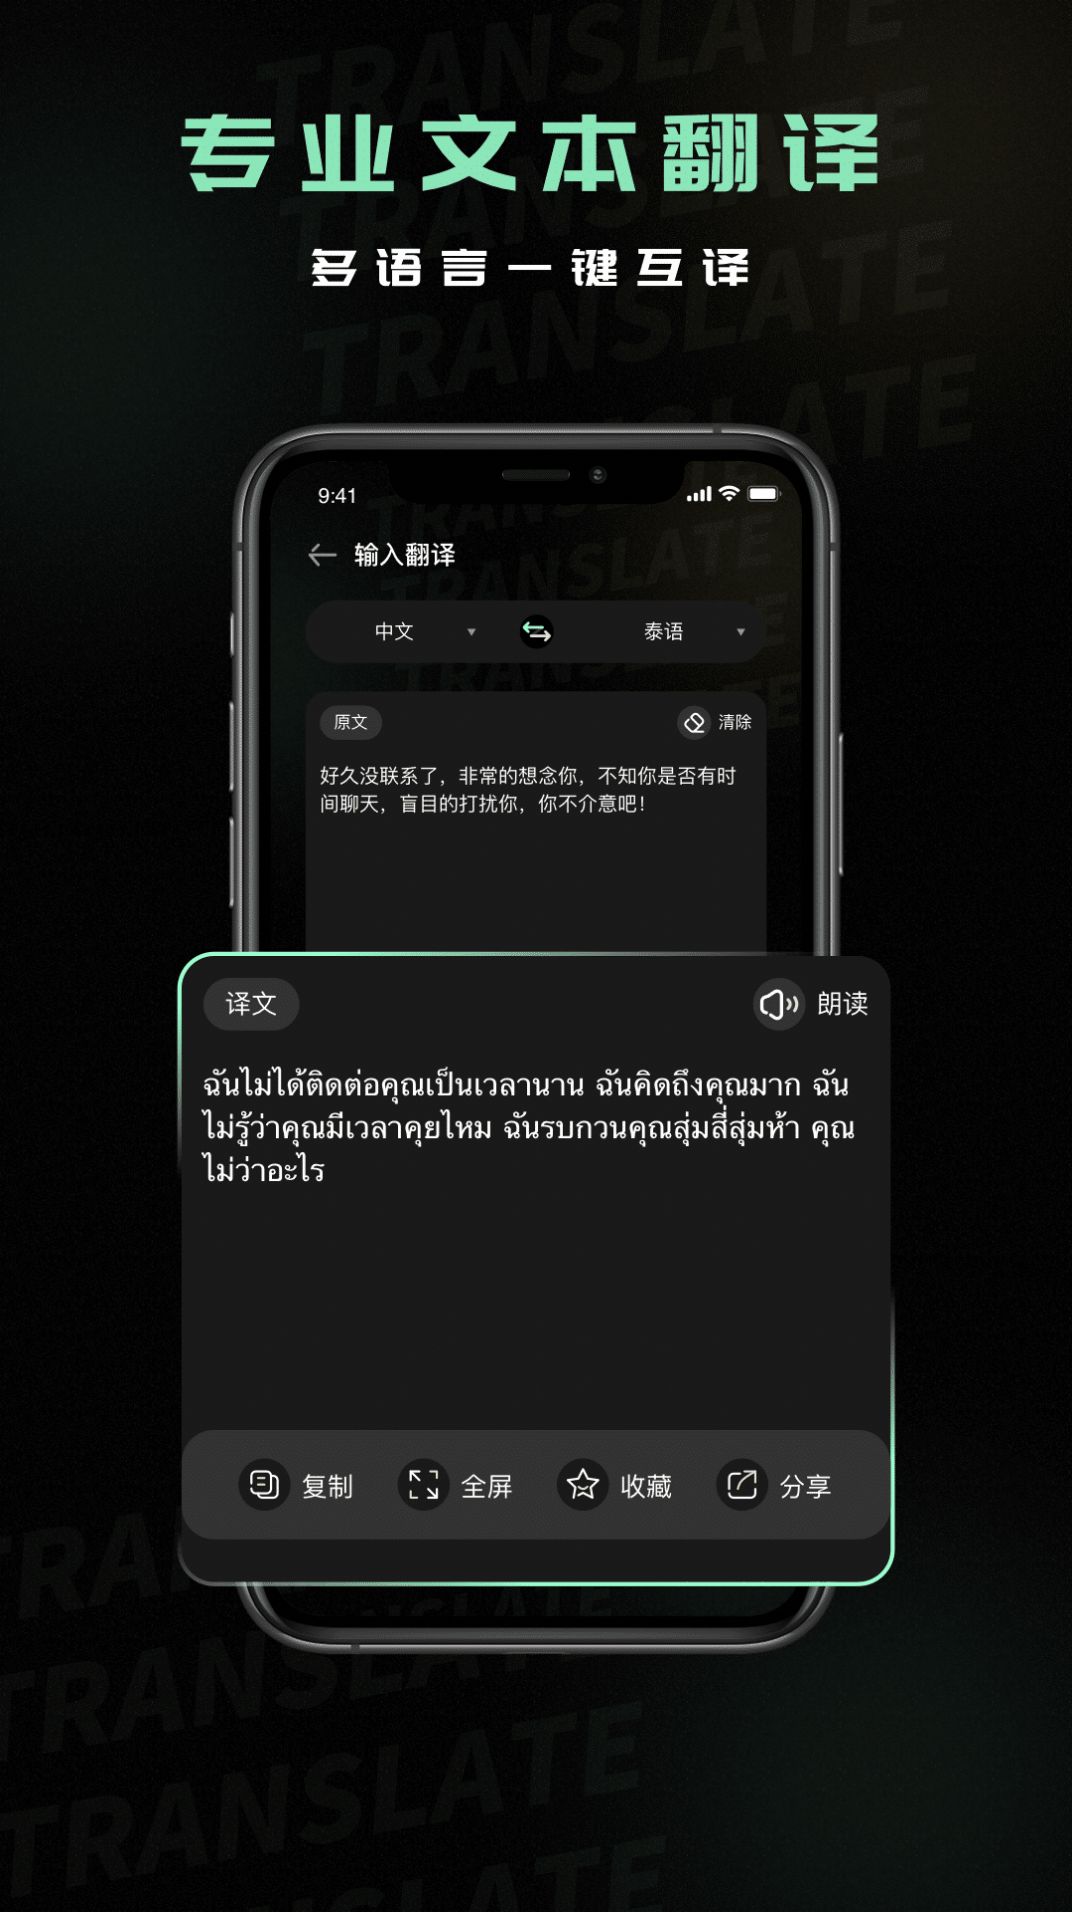 有没有什么好用的泰语翻译软件推荐？ - 知乎